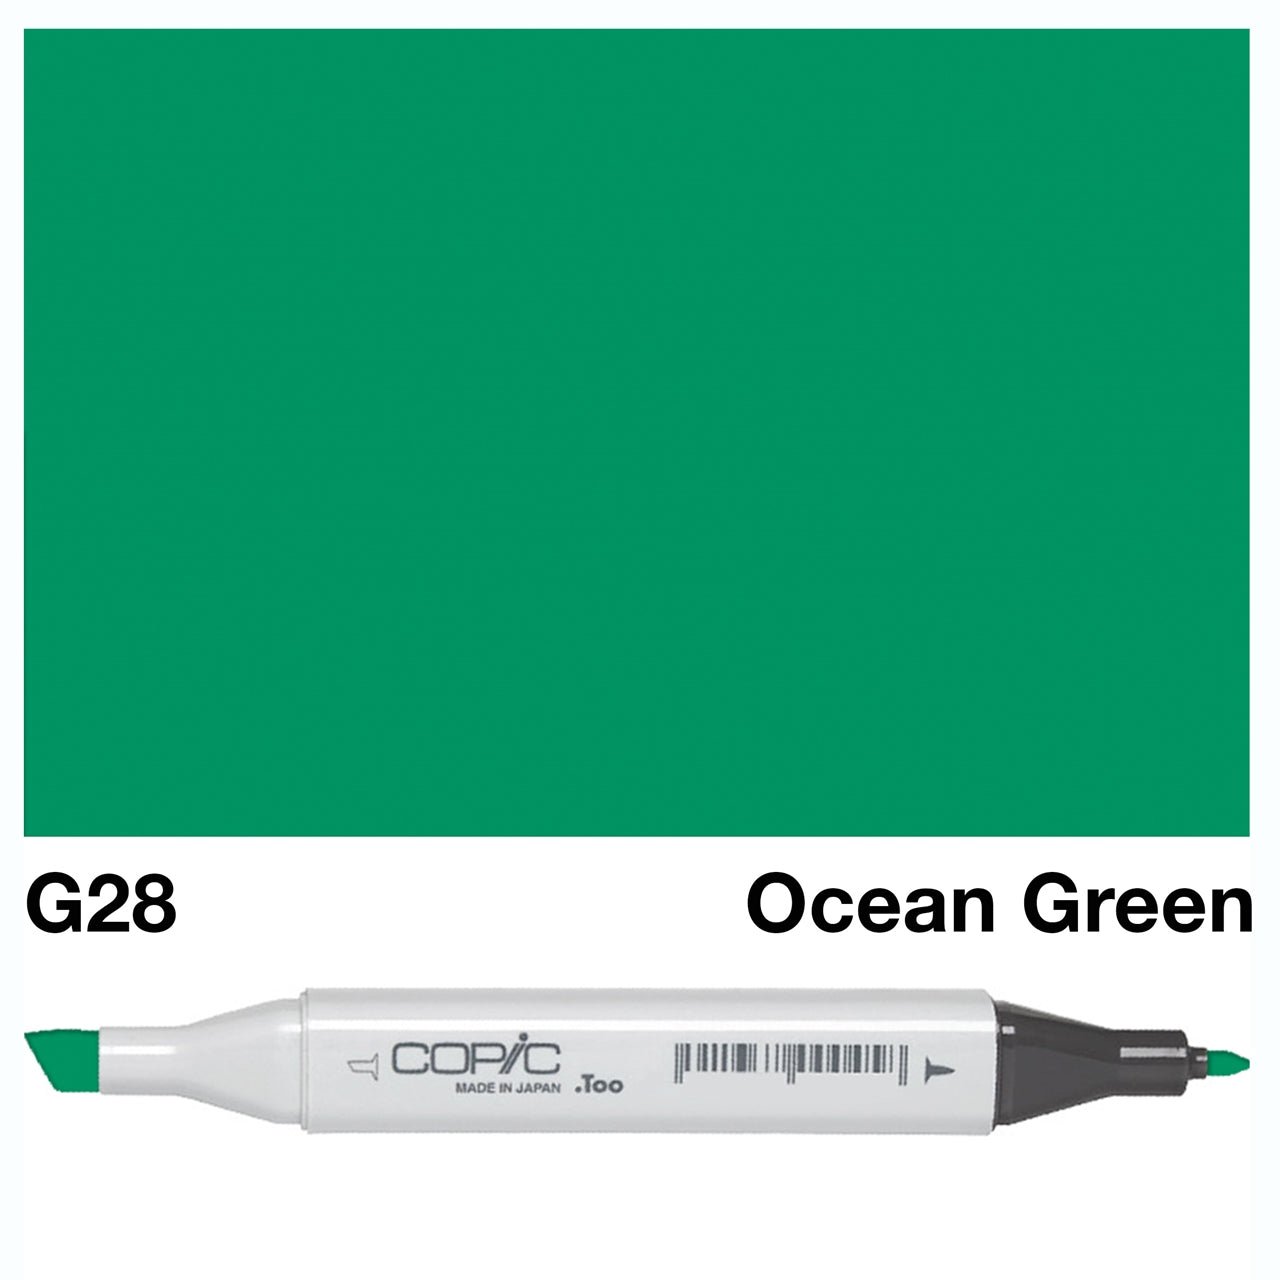 Copic Classic Marker G28 Ocean Green - theartshop.com.au